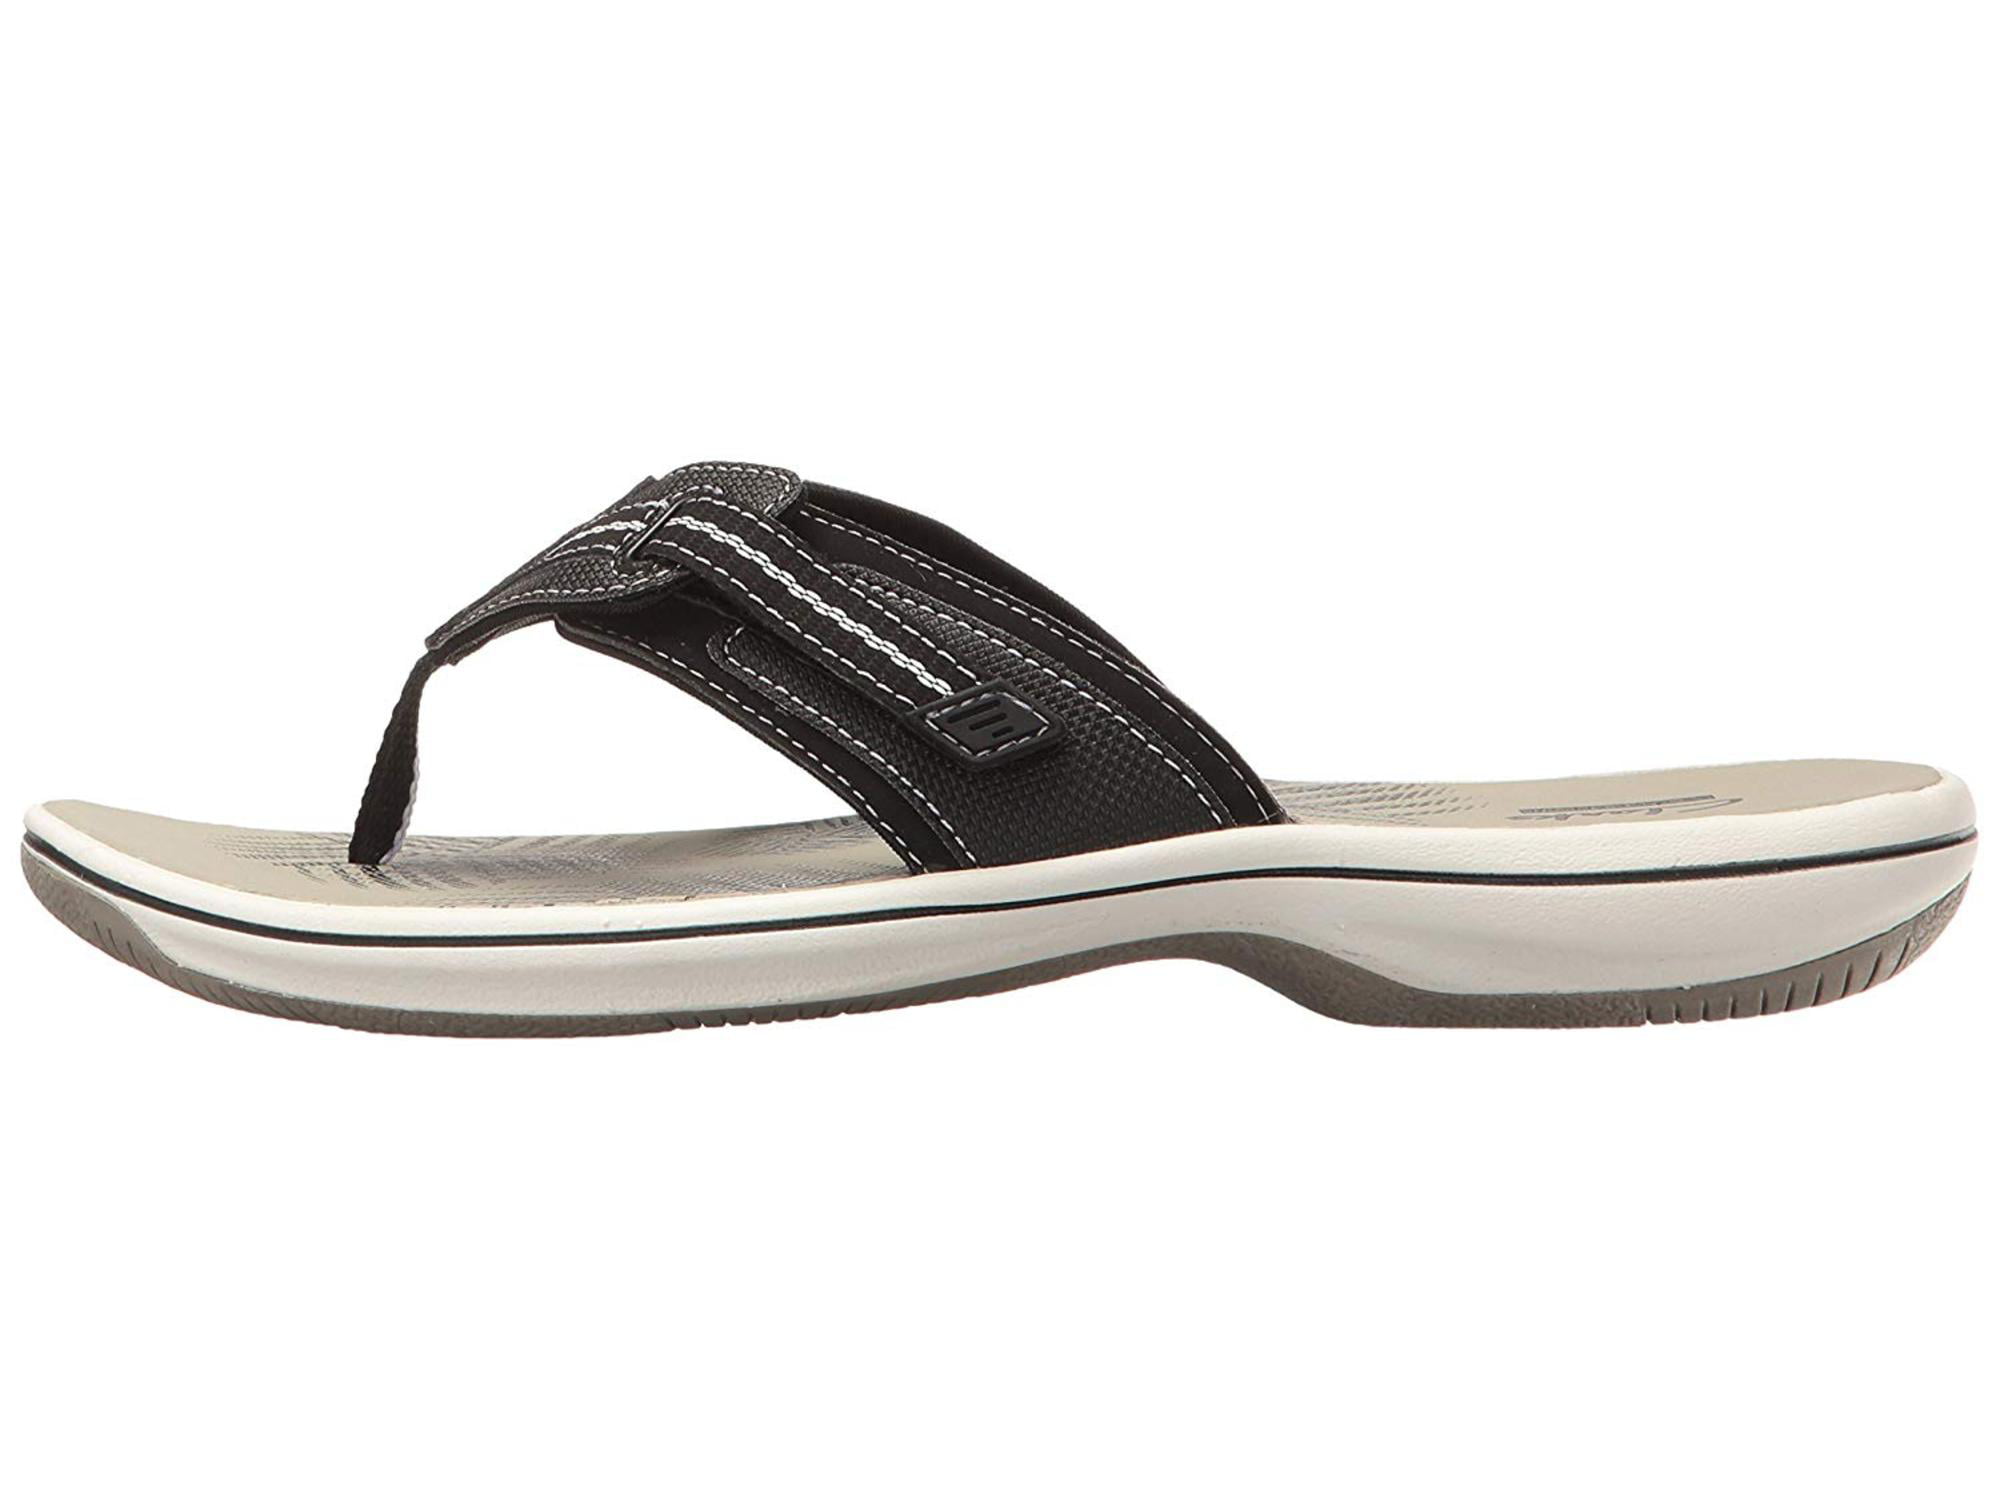 clarks brinkley jazz flip flop sandals